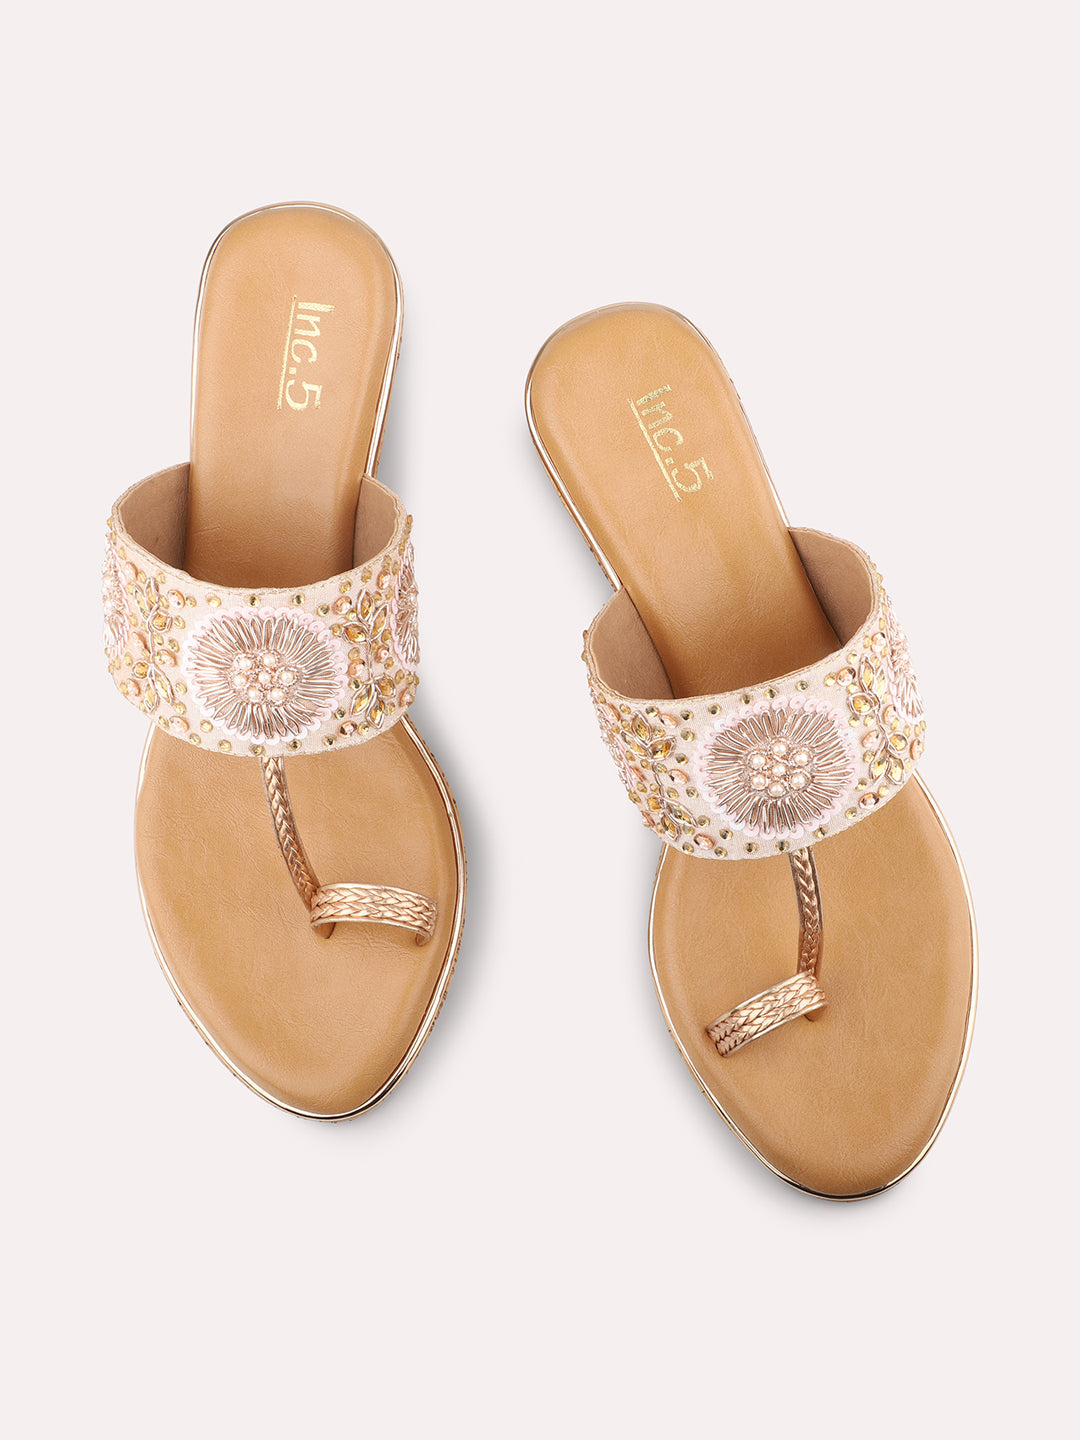 Buy Inc.5 Embellished Rose Gold Block Heels Online